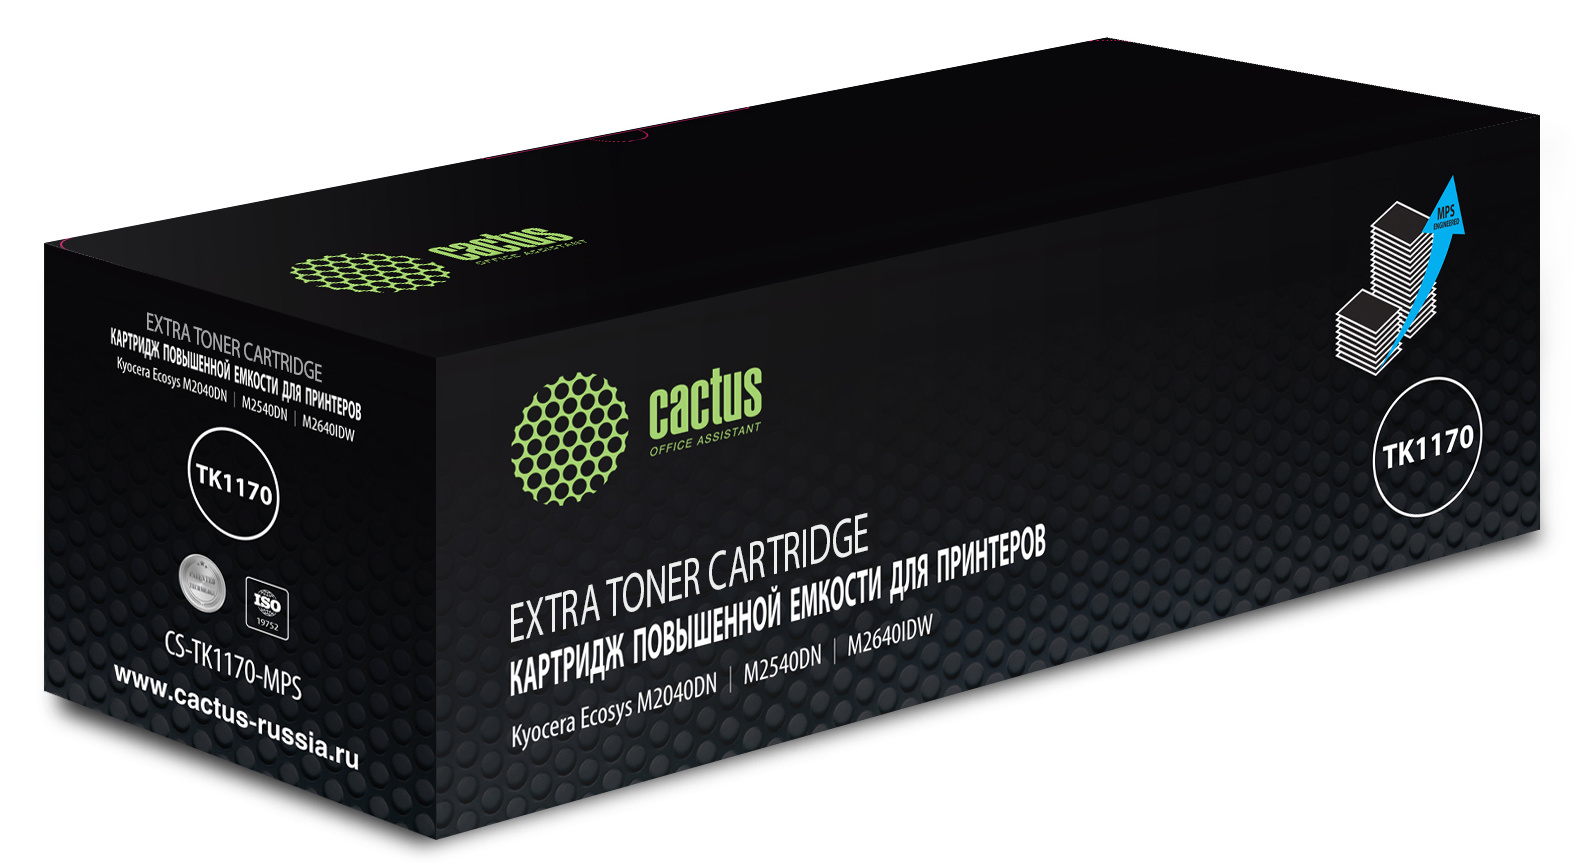 Картридж лазерный Cactus CS-TK1170-MPS TK-1170 черный (12000стр.) для Kyocera Ecosys M2040dn/ M2540dn/M2640idw